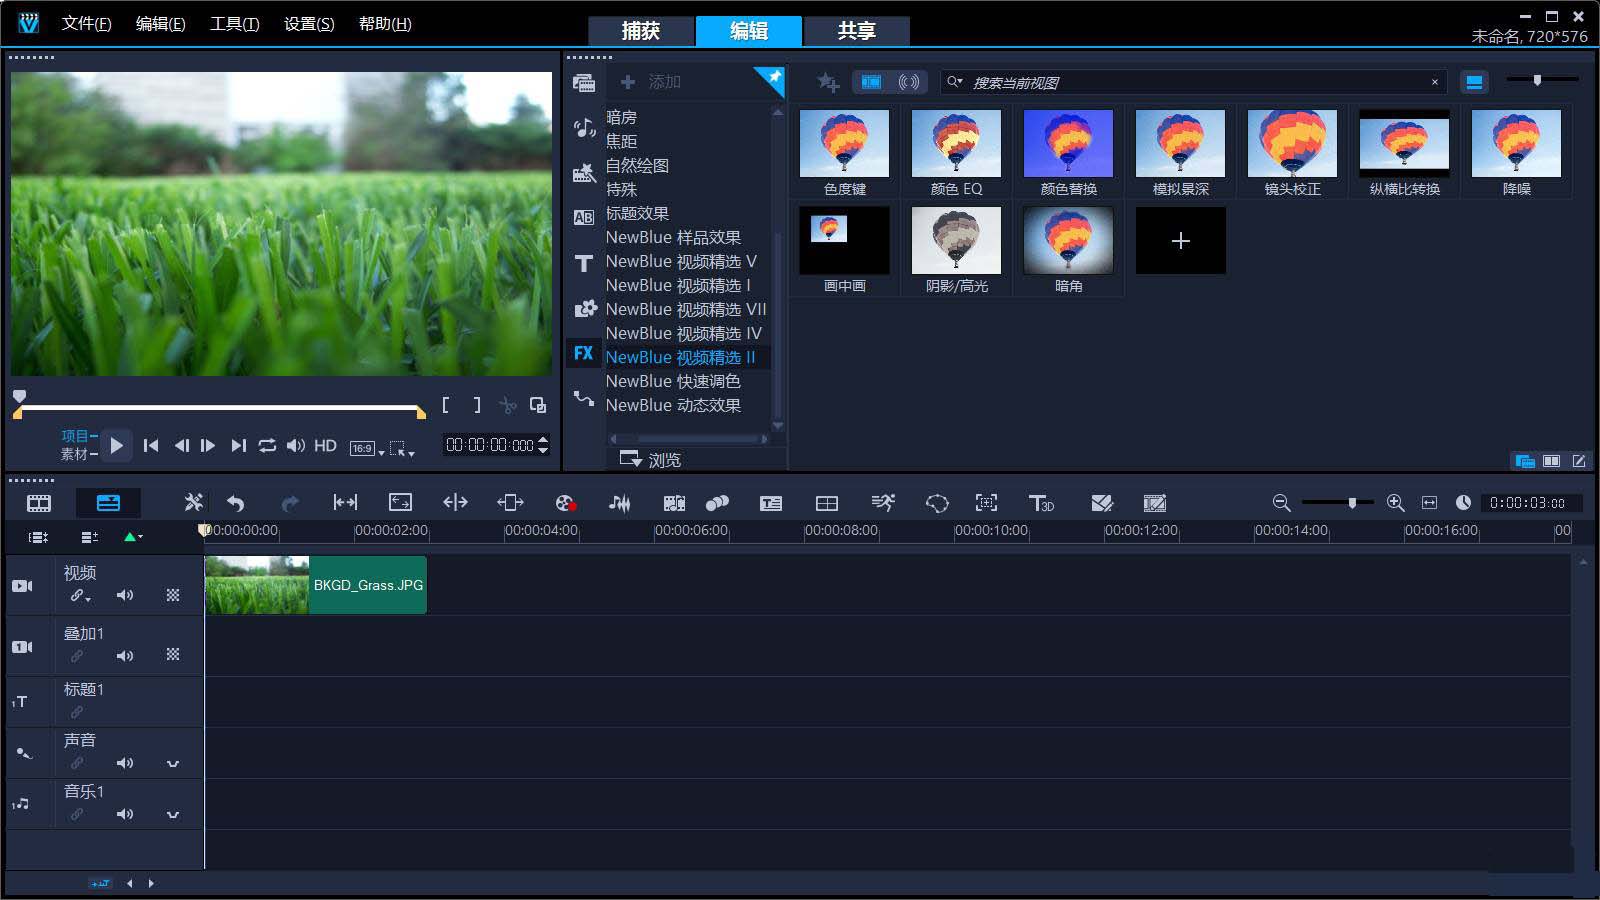 [视频处理]Corel Video Studio会声会影视频编辑处理软件下载,会声会影2020 v23.0.1.392 中文直装旗舰版